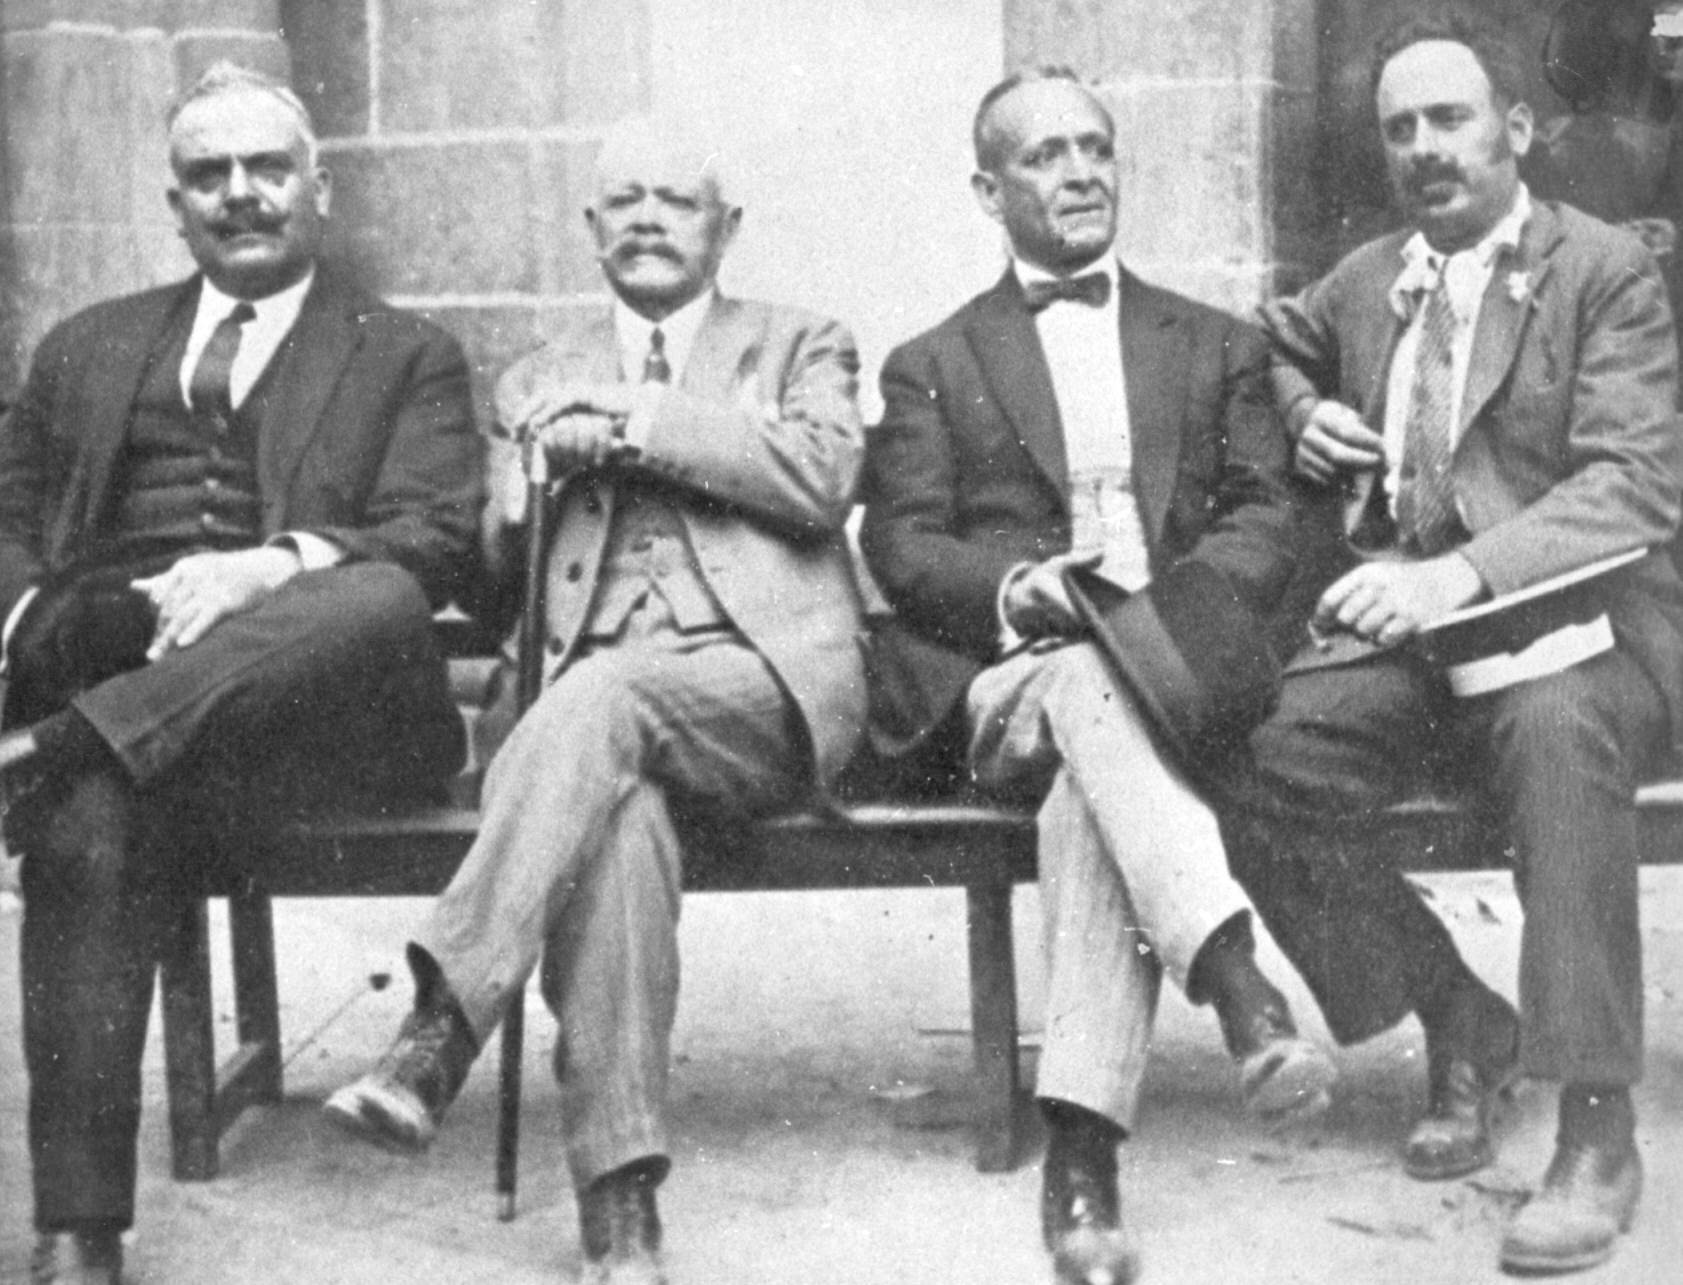 

Artillería pesada: D. Tomás Mendoza, D. Marcos Domínguez,
D. Miguel Quesada y D. Rafael Rodríguez, “Pistoleras”.

